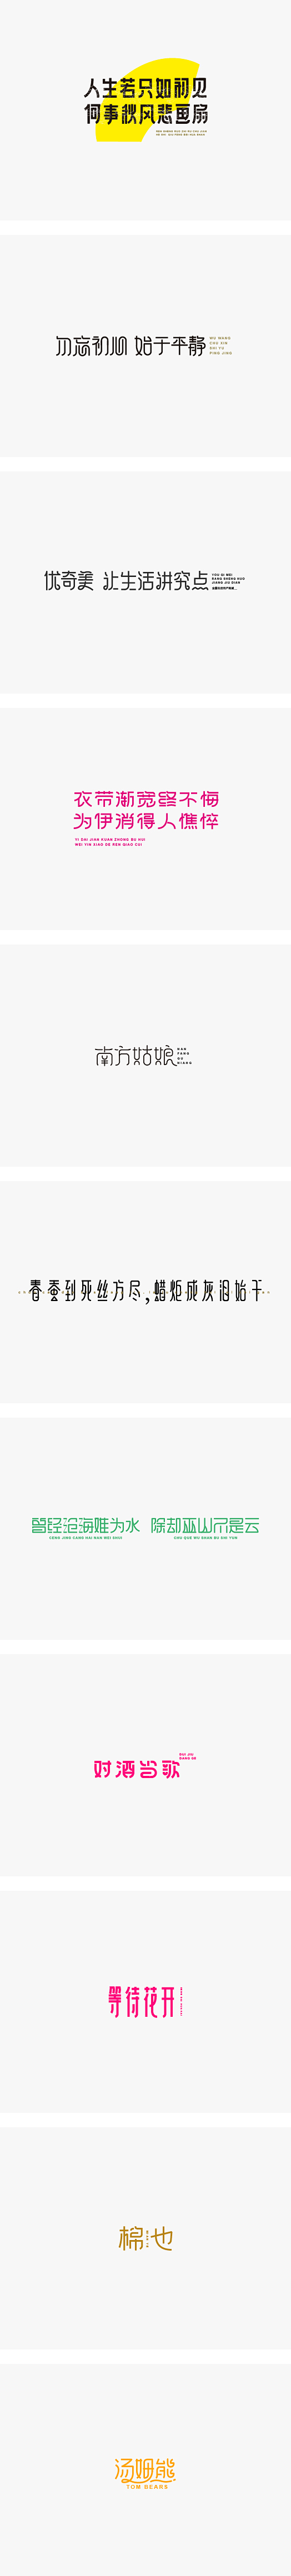 早期的字体练习-字体传奇网-中国首个字体...